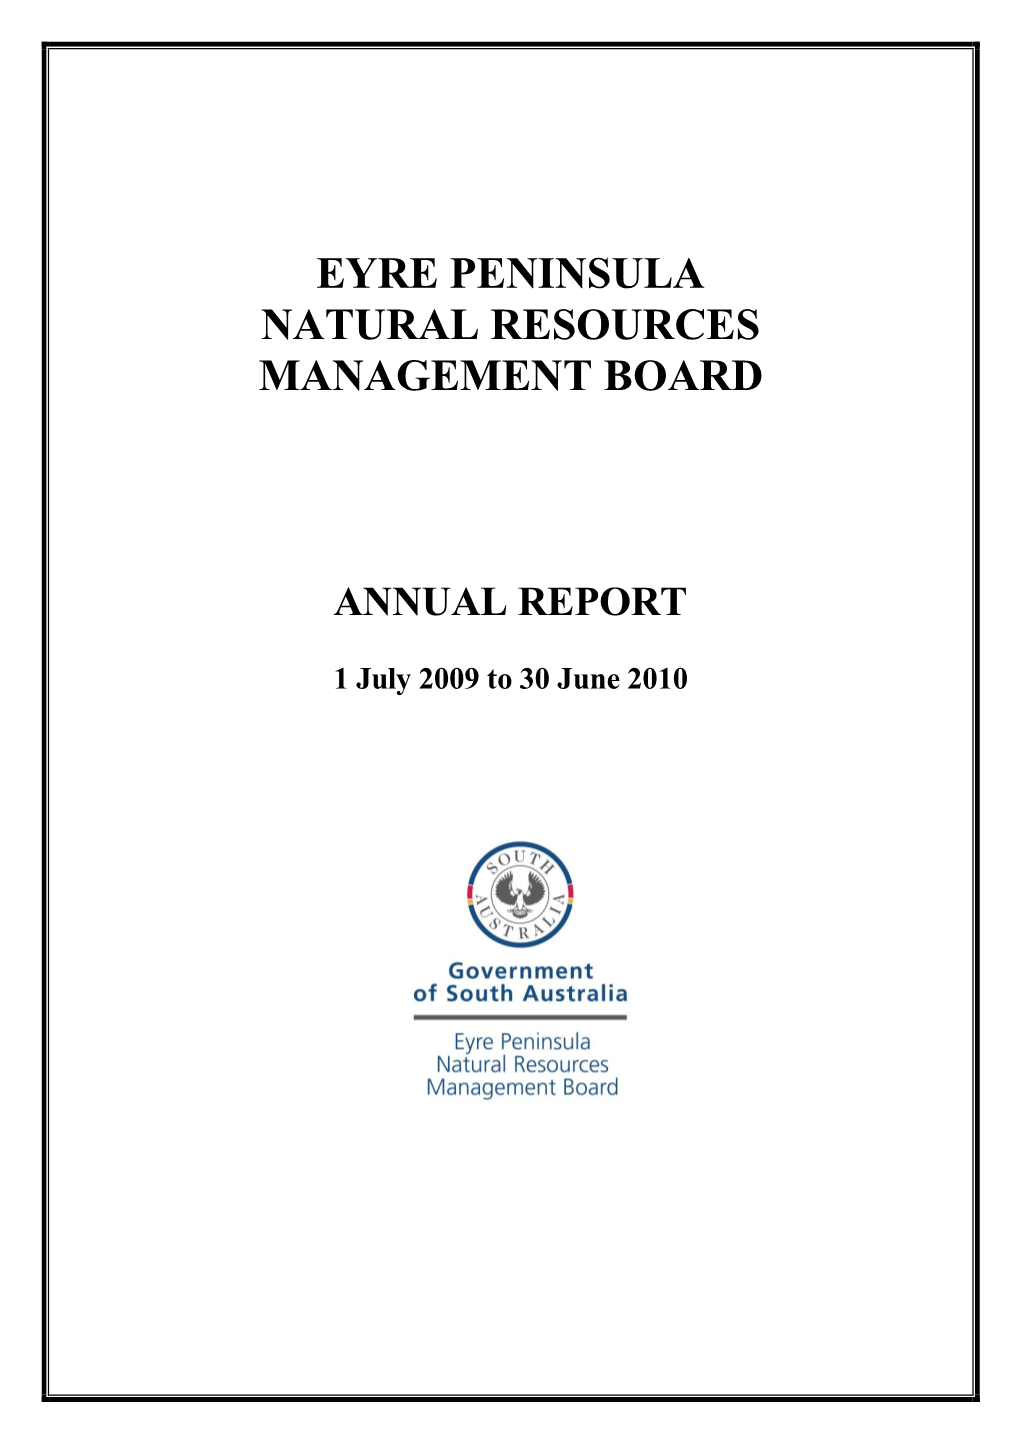 EPNRM Board Annual Report